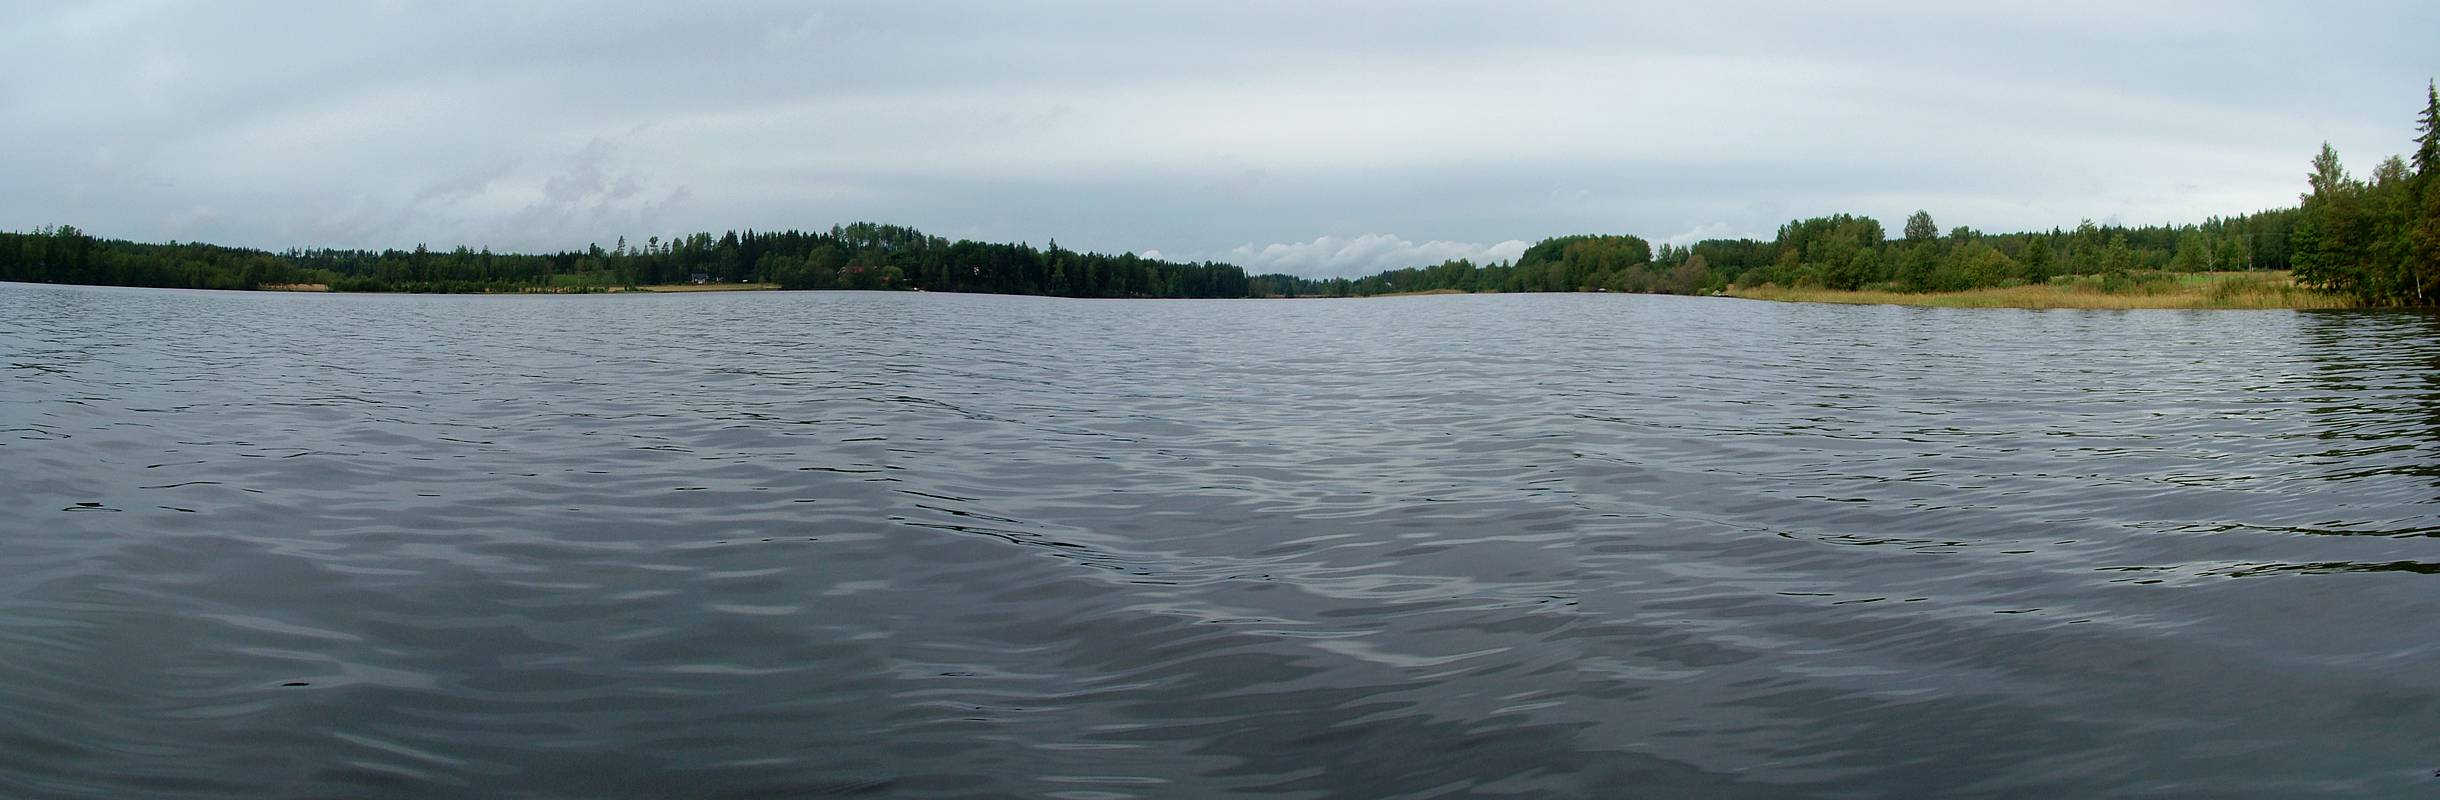 Vor uns liegt das nördliche Ende des Lersjöns. Der See verengt sich zu einem Kanal.